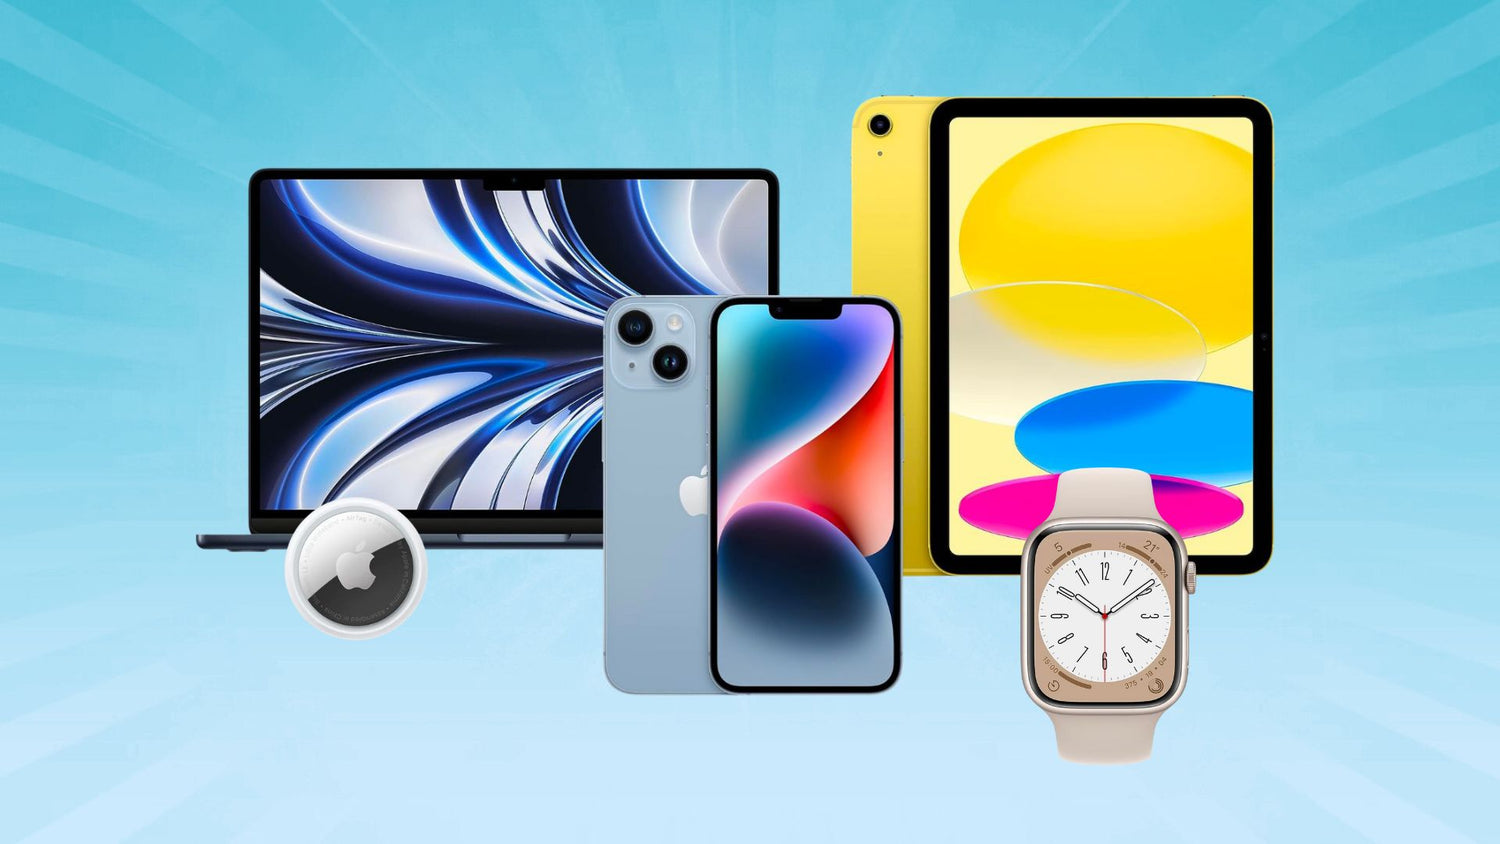 iphone di ultima generazione di Apple, Macbook, iPad, airpods, apple watch, homepod, apple tv, Mac pro, Magesafe, apple tv